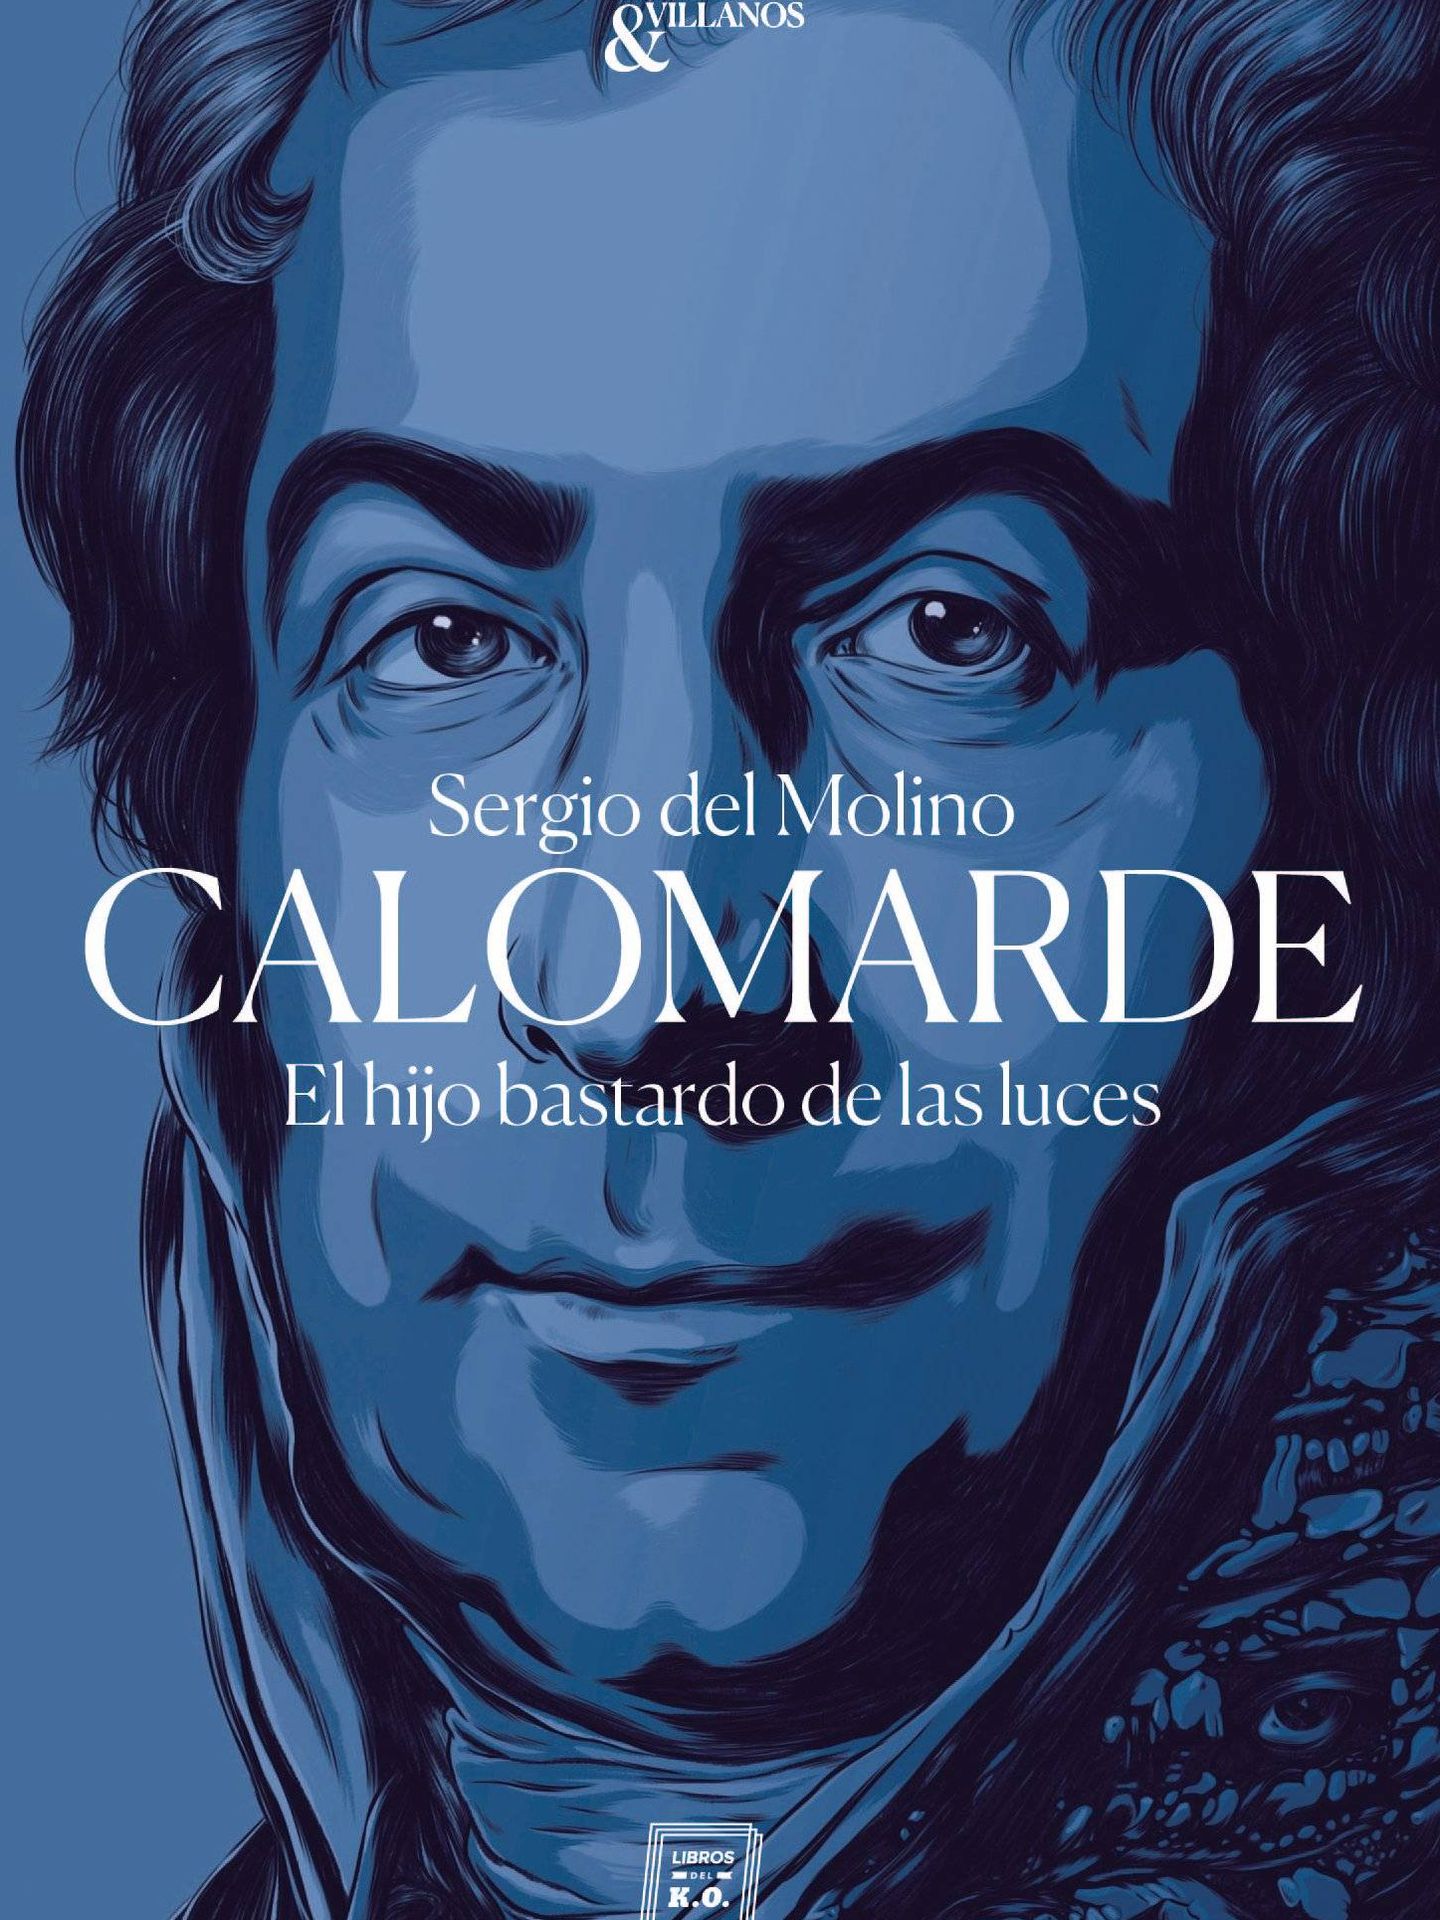 'Calomarde'.